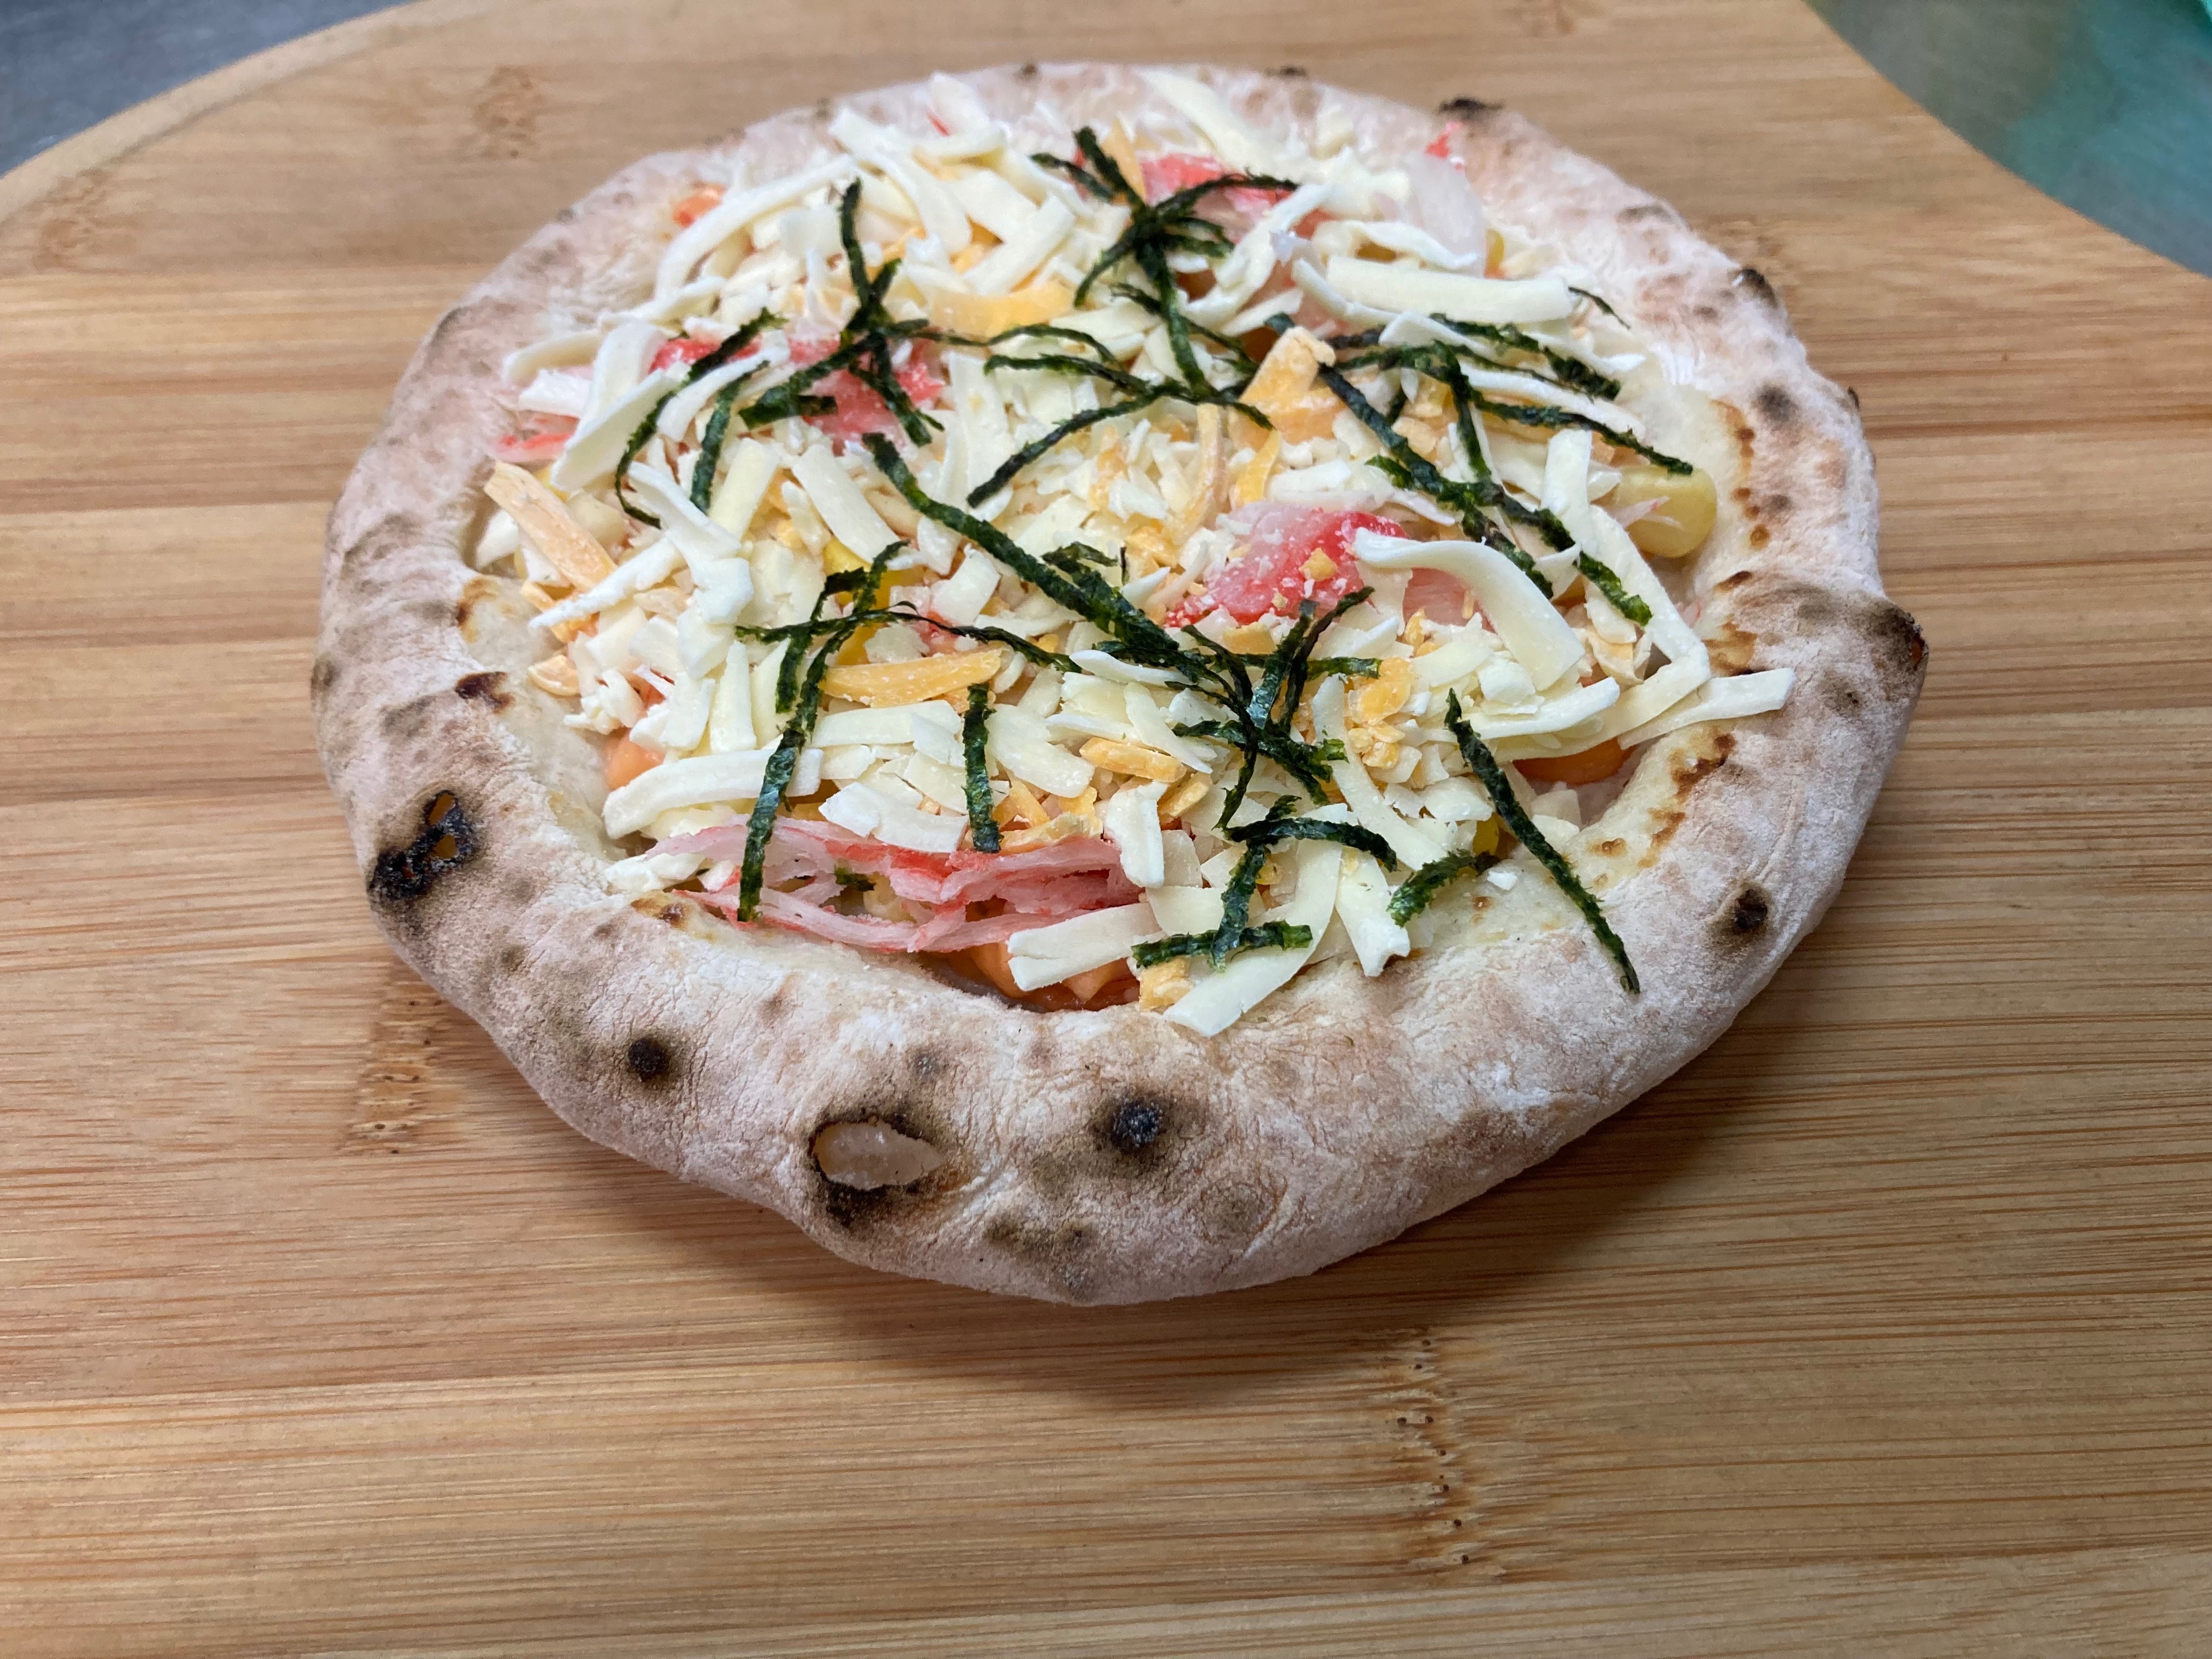 龍蝦沙拉6吋冷凍pizza